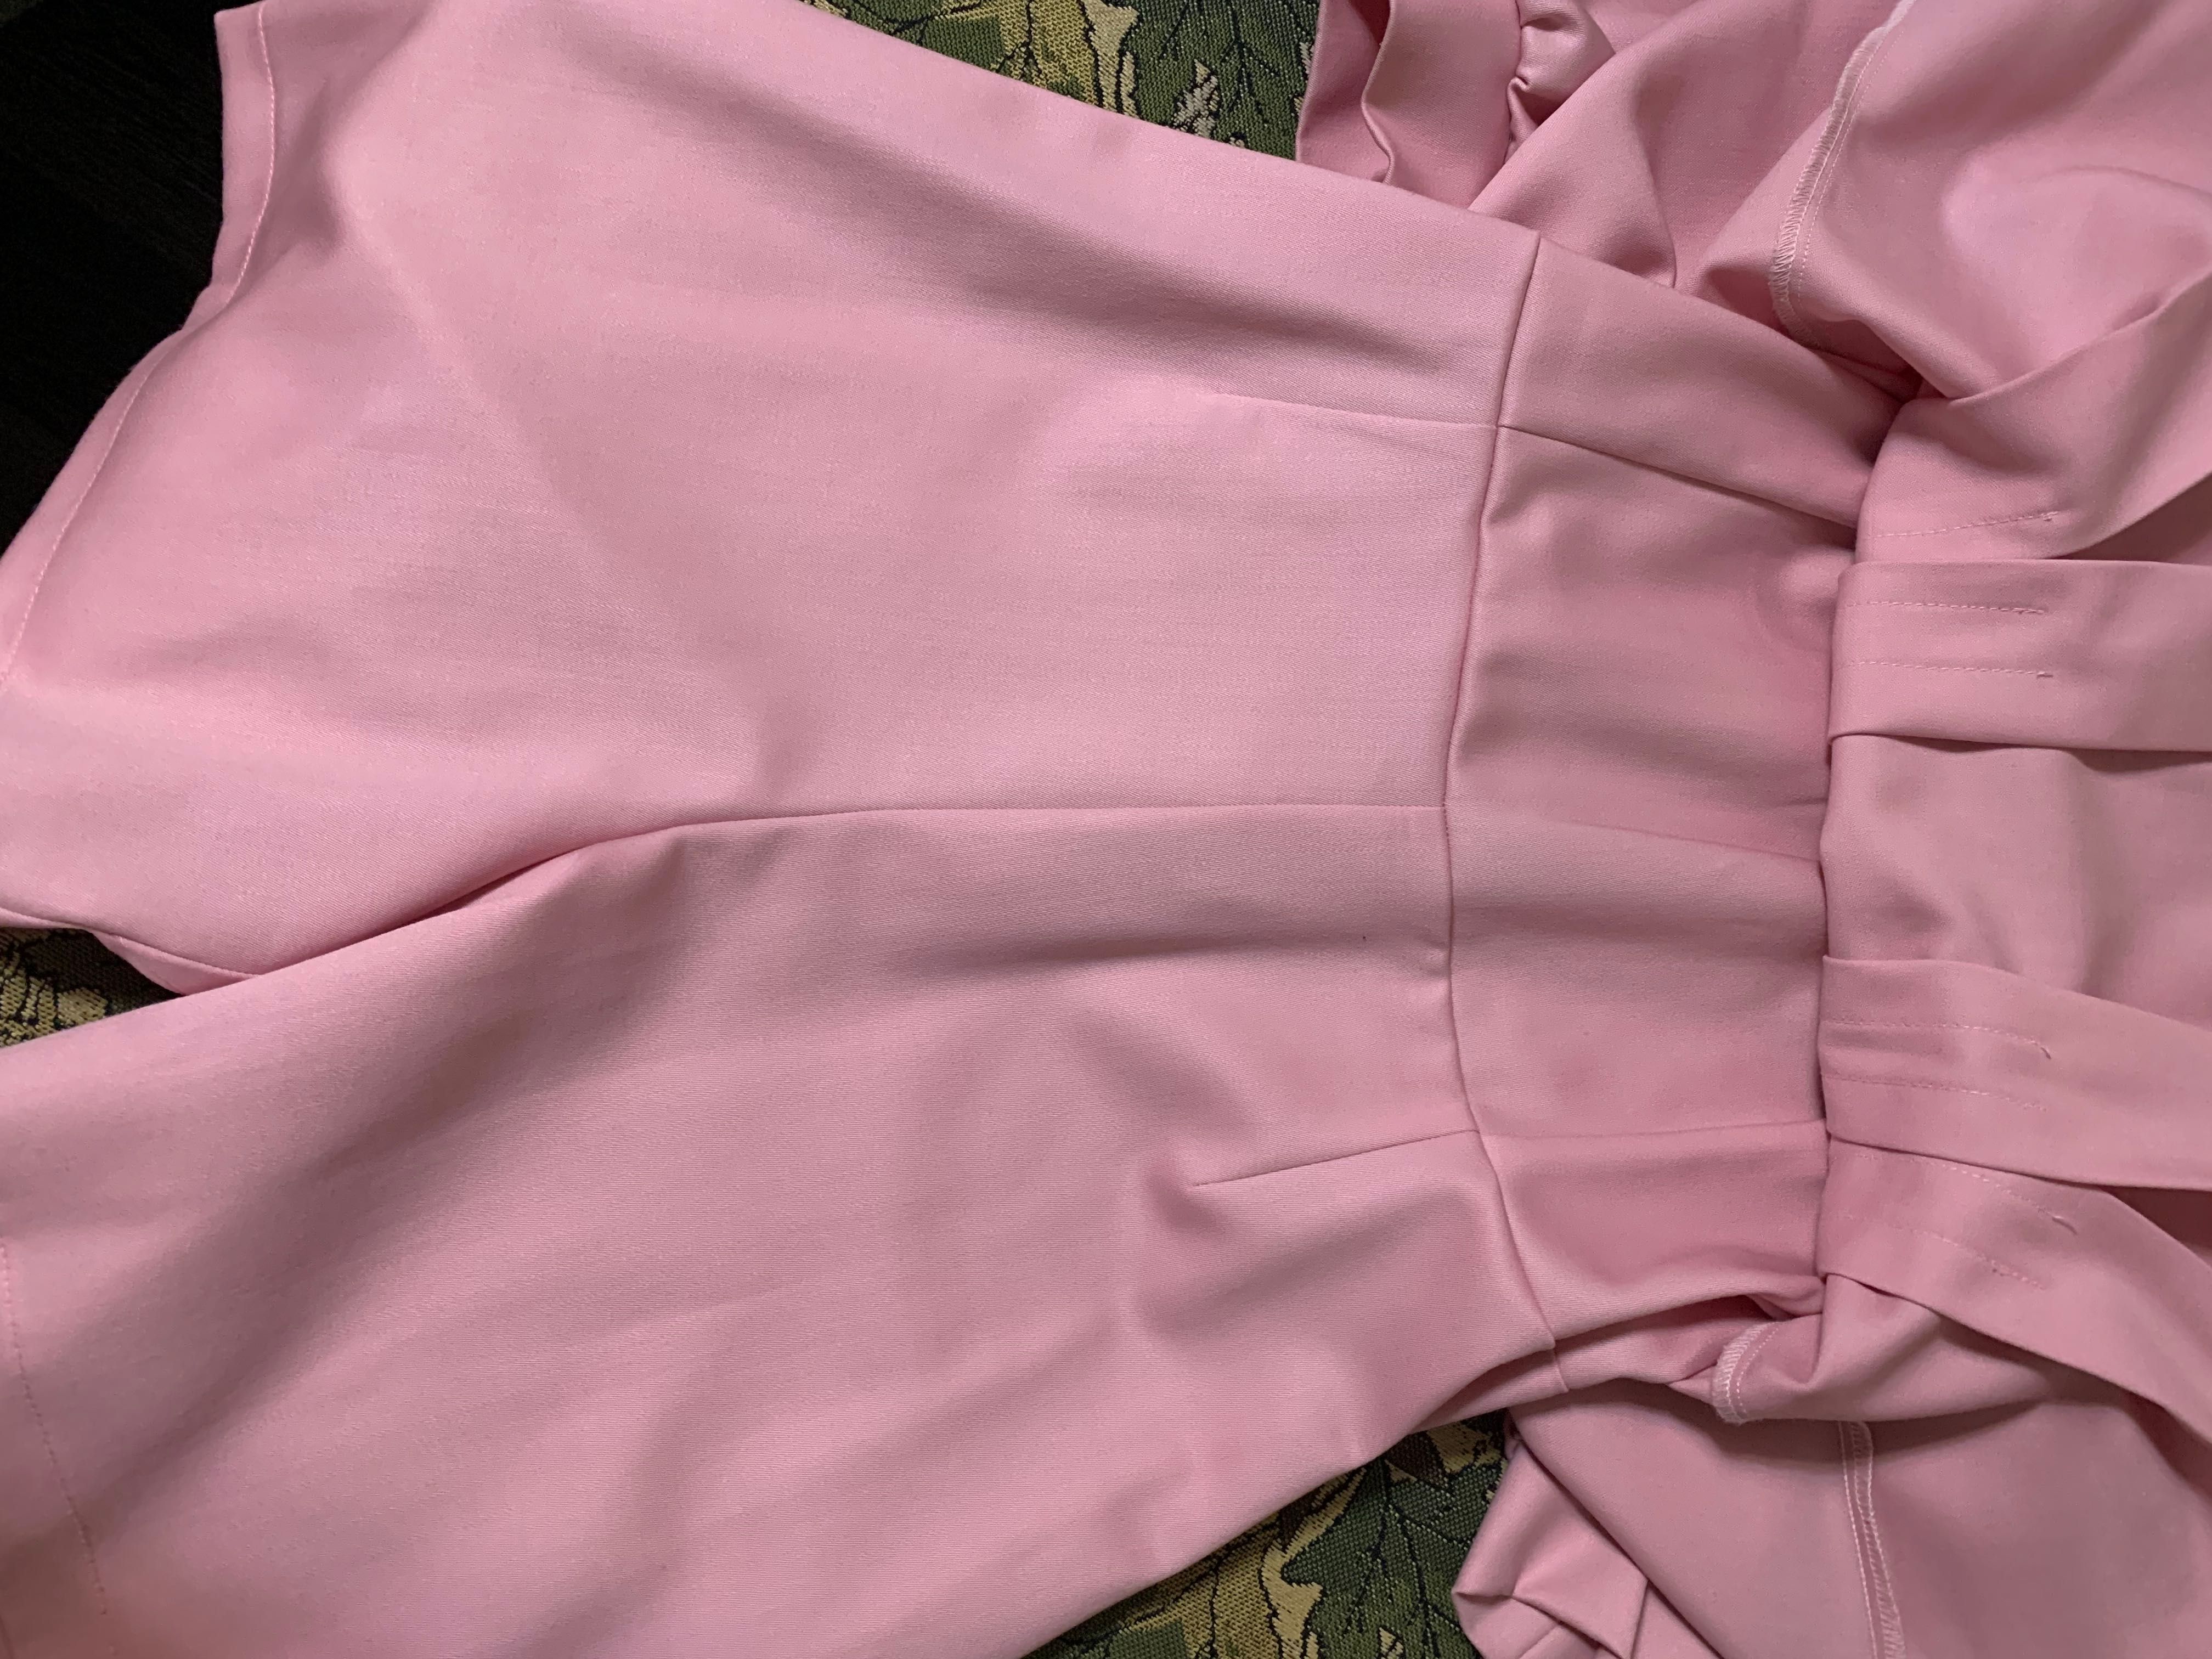 Розовое платье эксклюзивного пошива